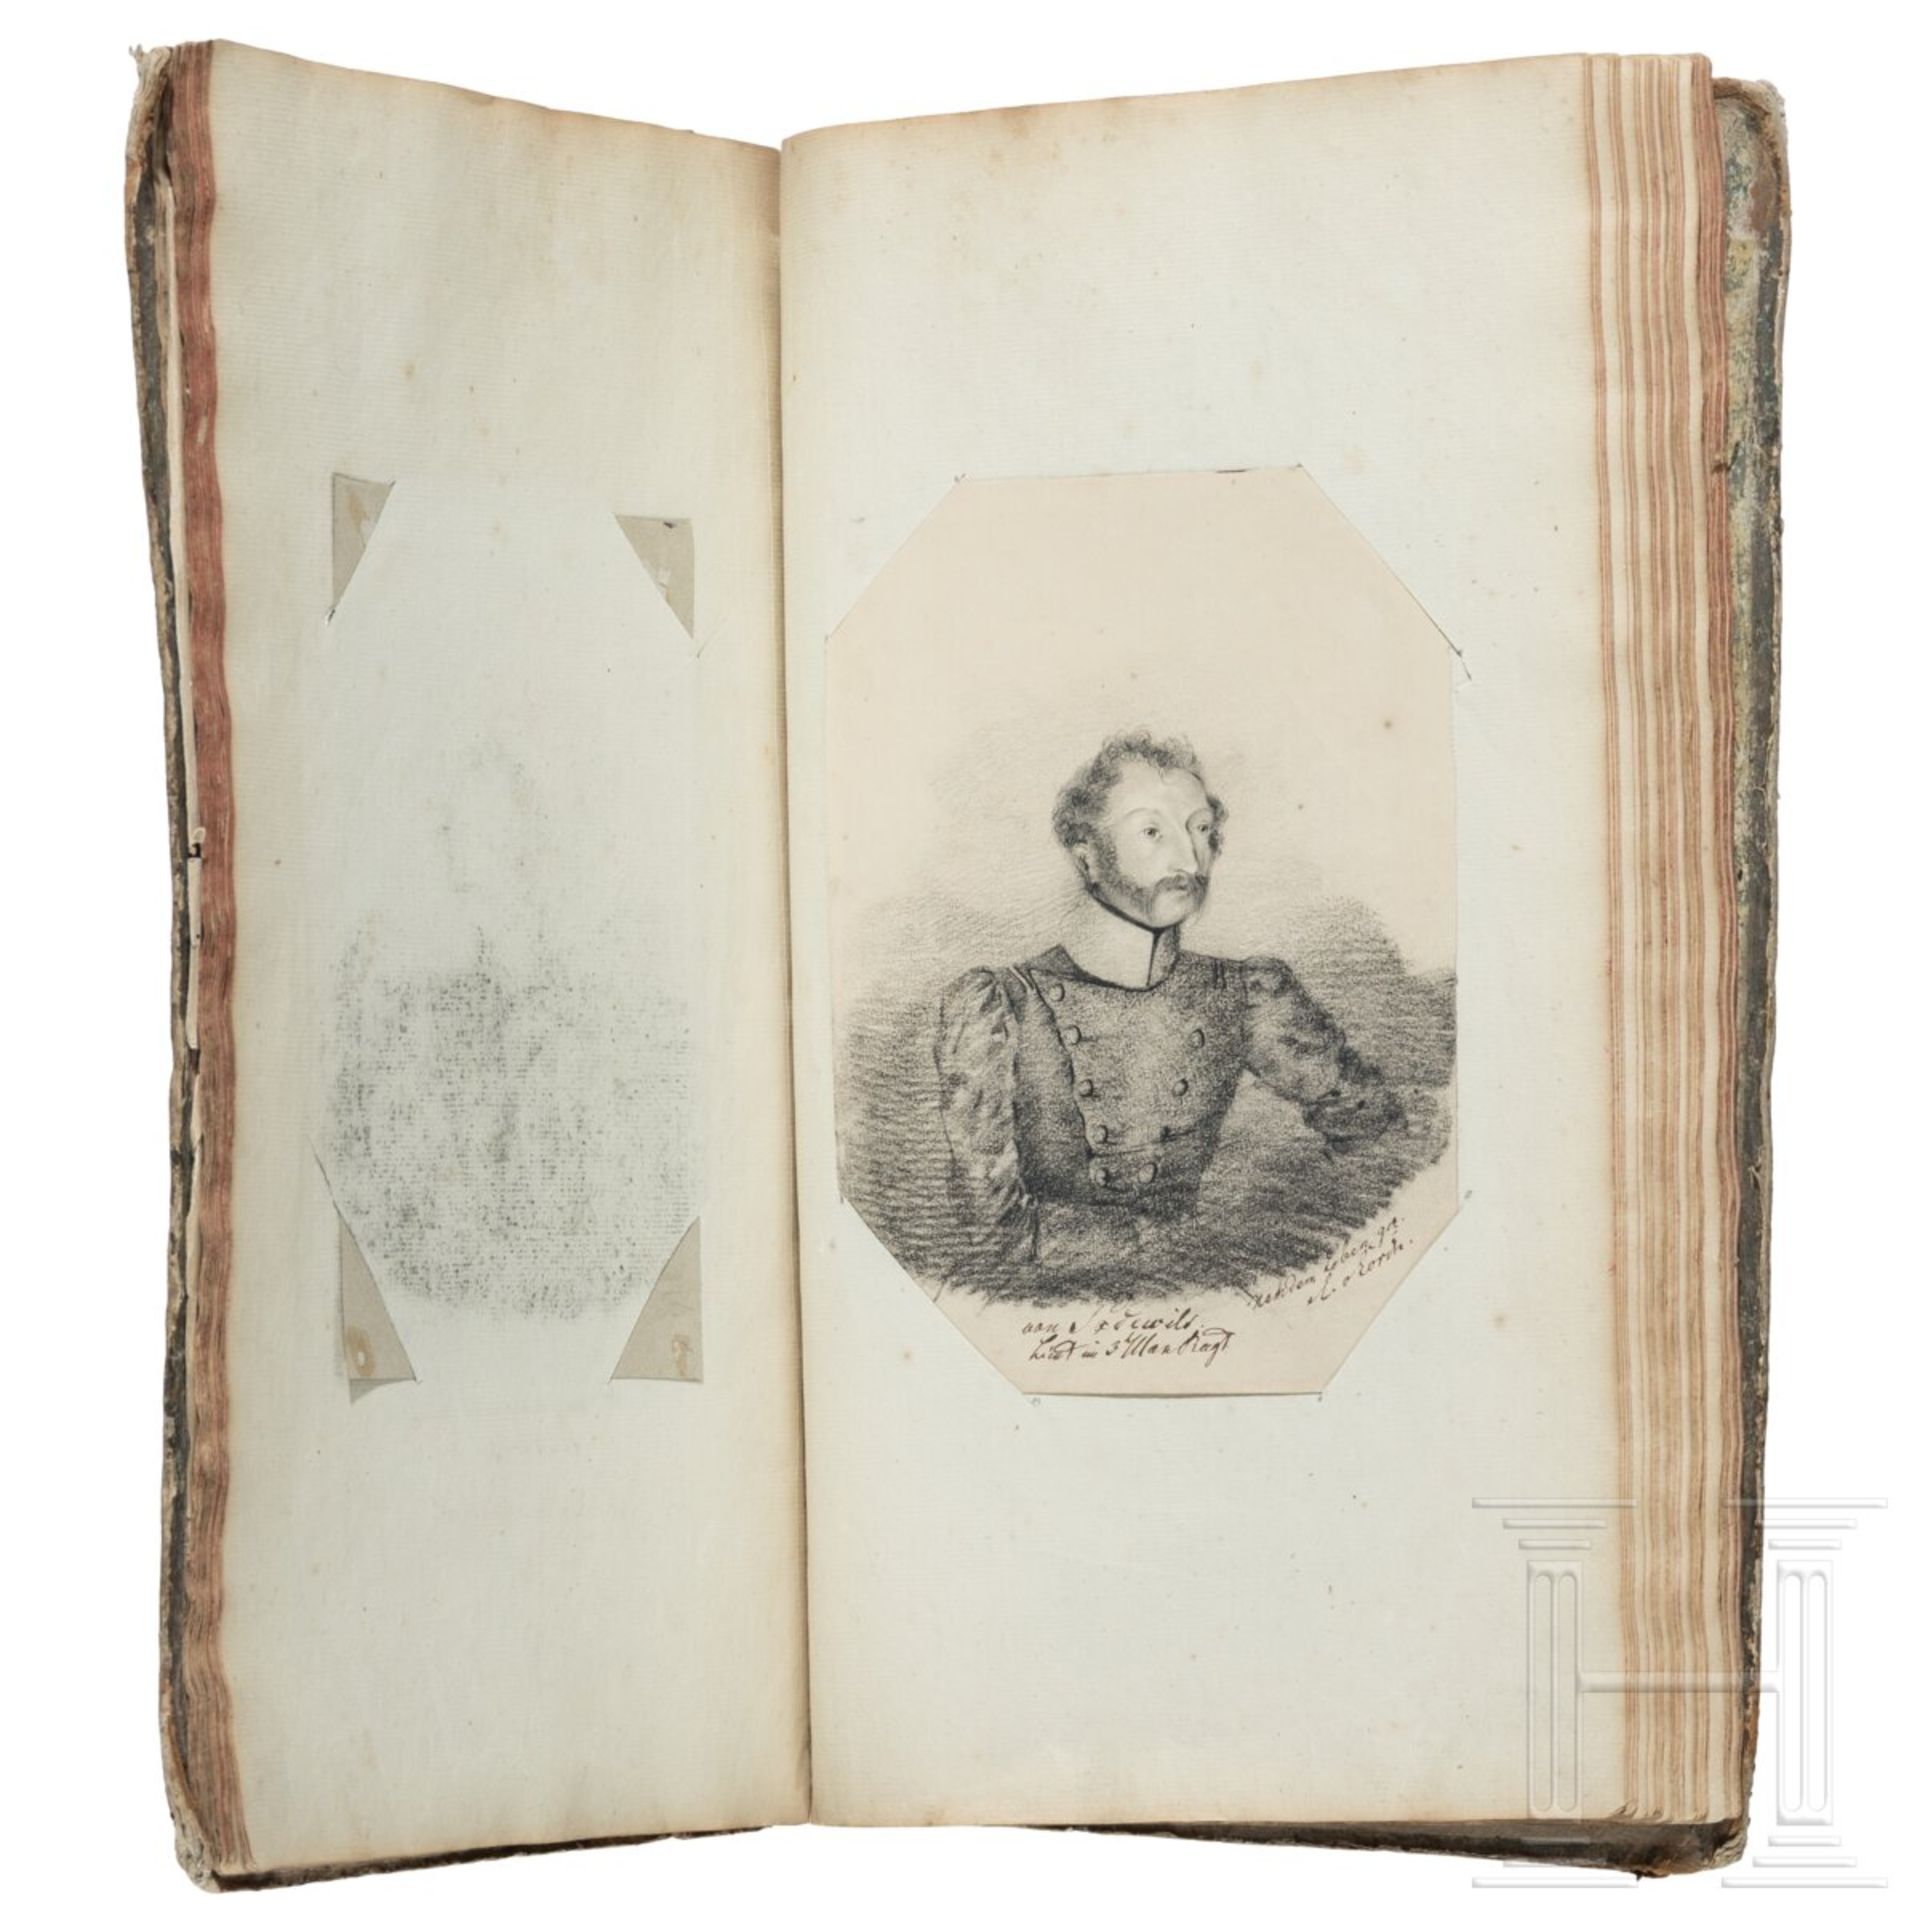 Album mit handgezeichneten Offiziersportraits, um 1830 - 1850 - Bild 6 aus 10